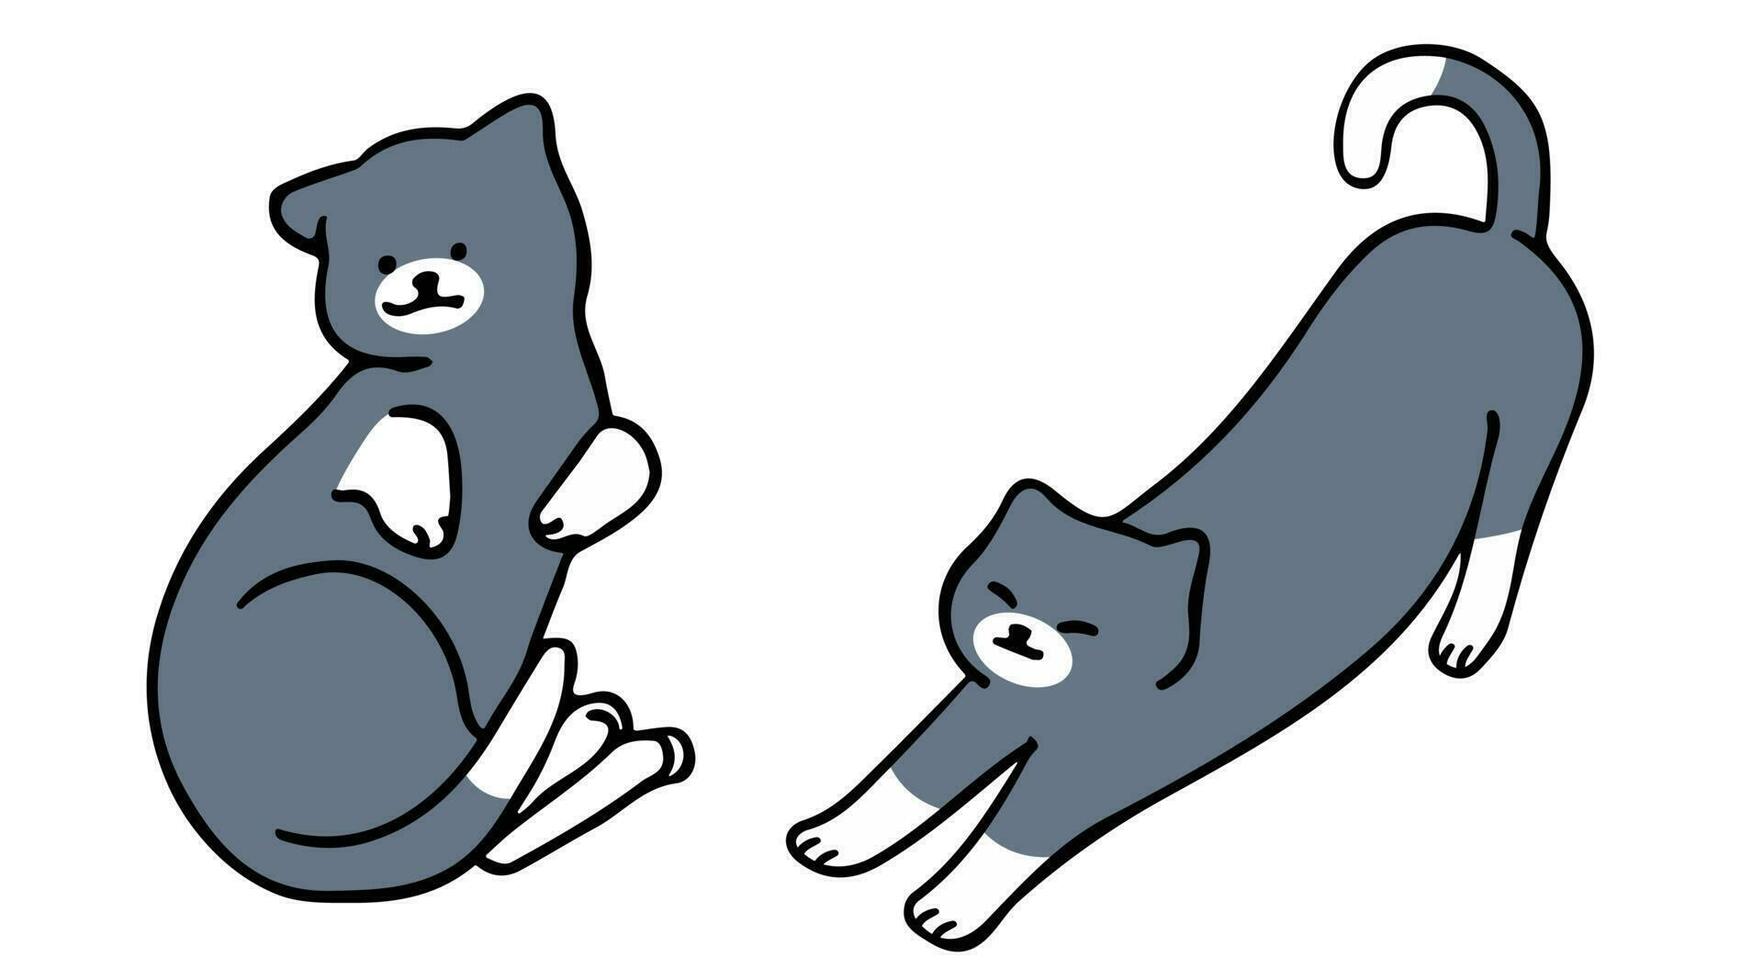 een kat in een schets stijl karakter ontwerp en een vlak ontwerp stijl minimaal vector illustratie.